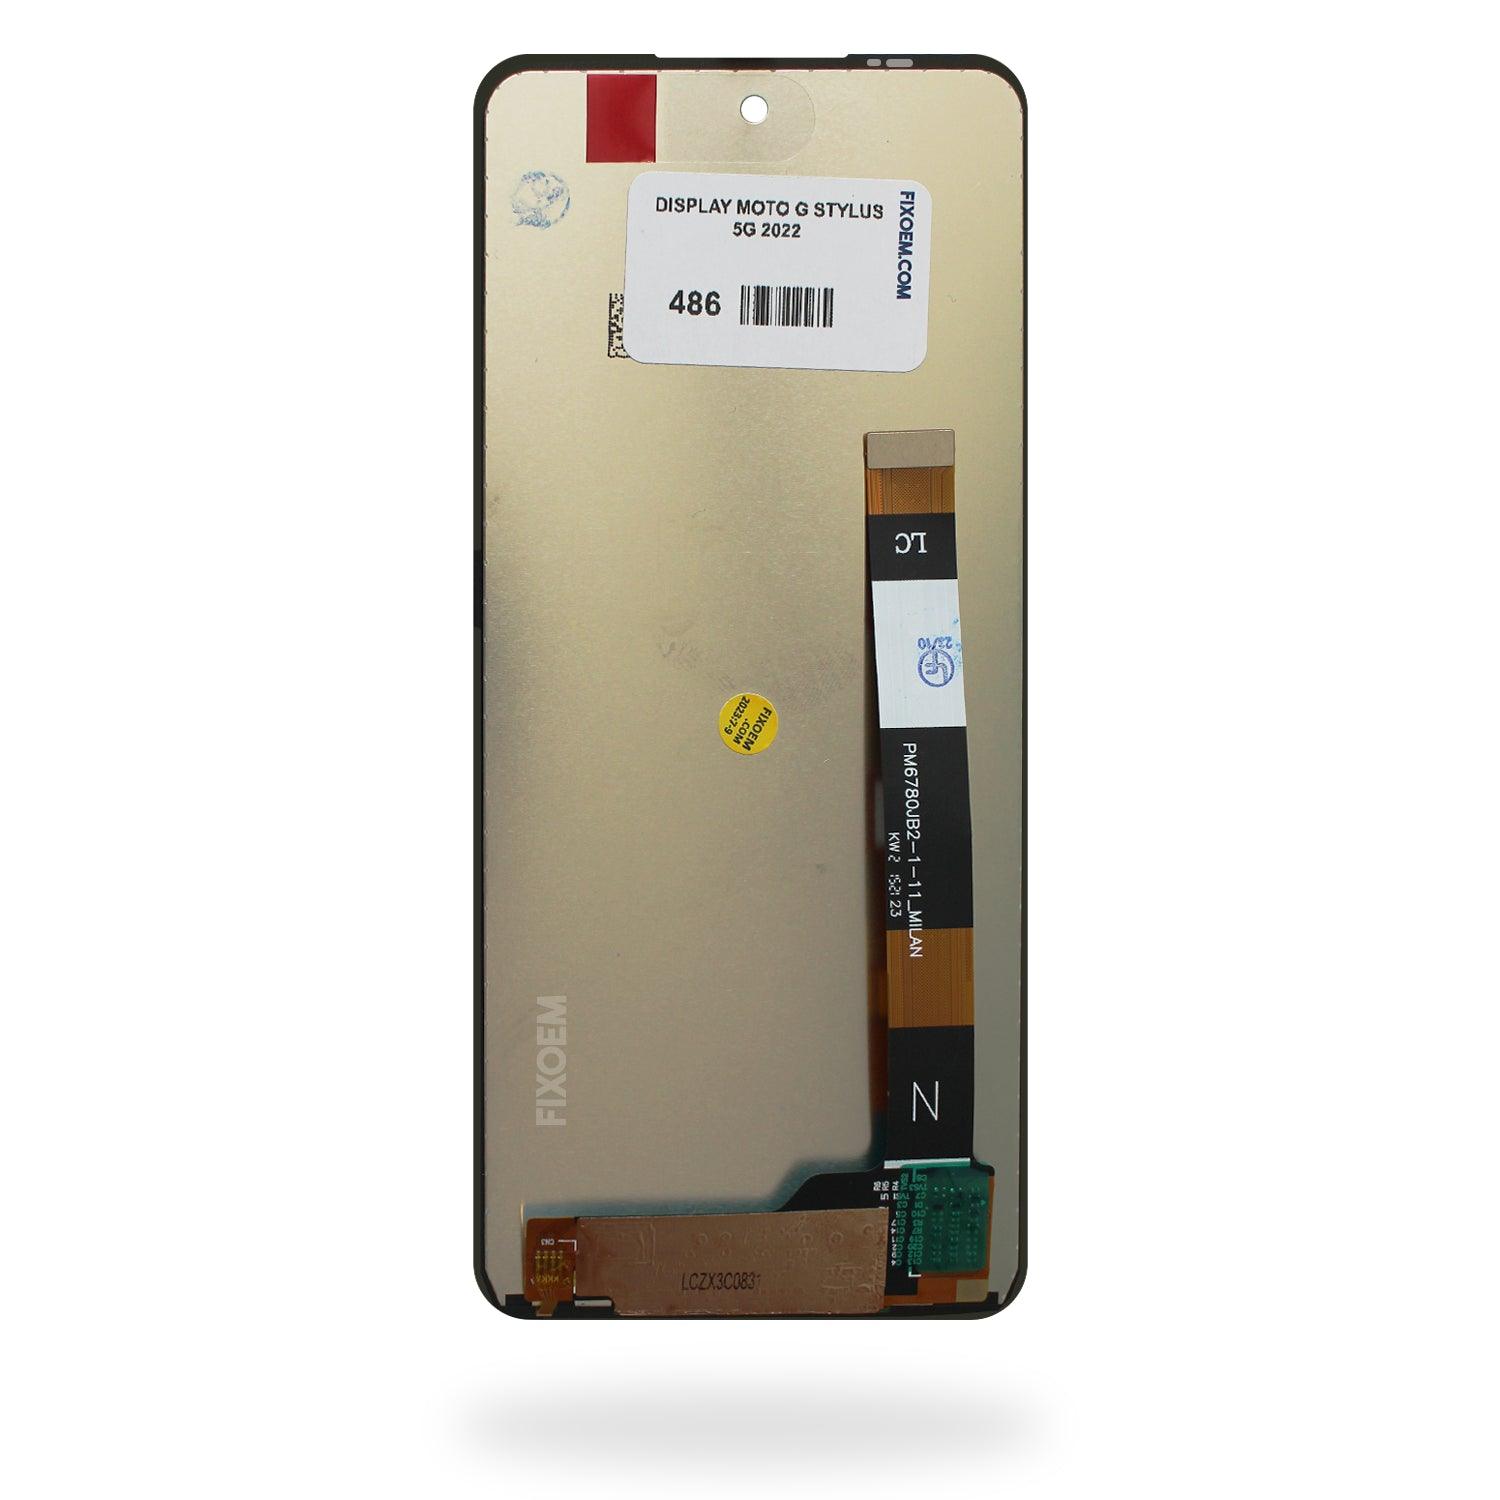 Display Moto G Stylus 5G 2022 XT2131 -DL -1 -3 -4 a solo $ 380.00 Refaccion y puestos celulares, refurbish y microelectronica.- FixOEM